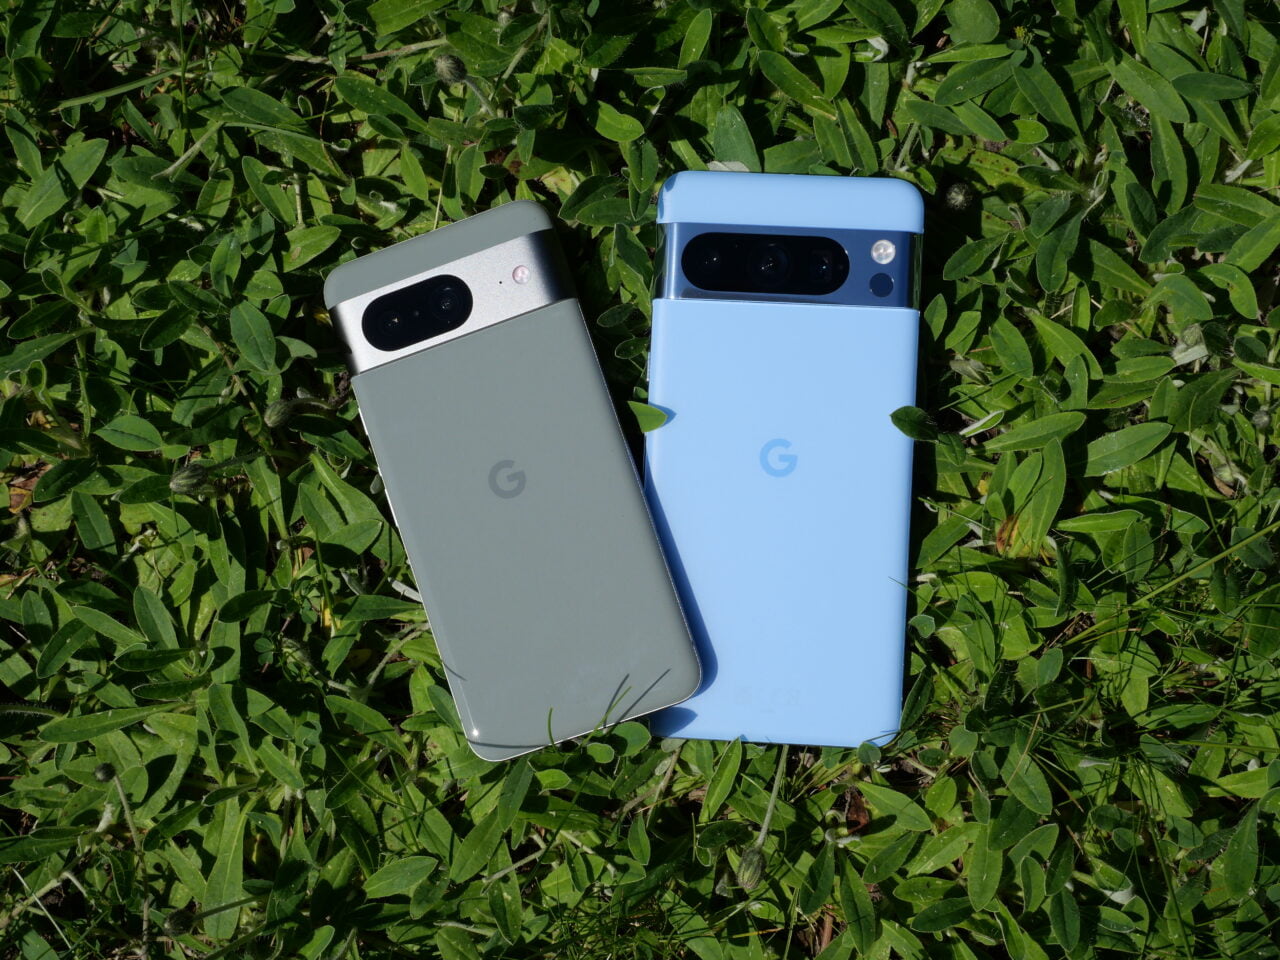 Dwa smartfony Google, jeden szary a drugi niebieski, leżące na zielonej trawie.